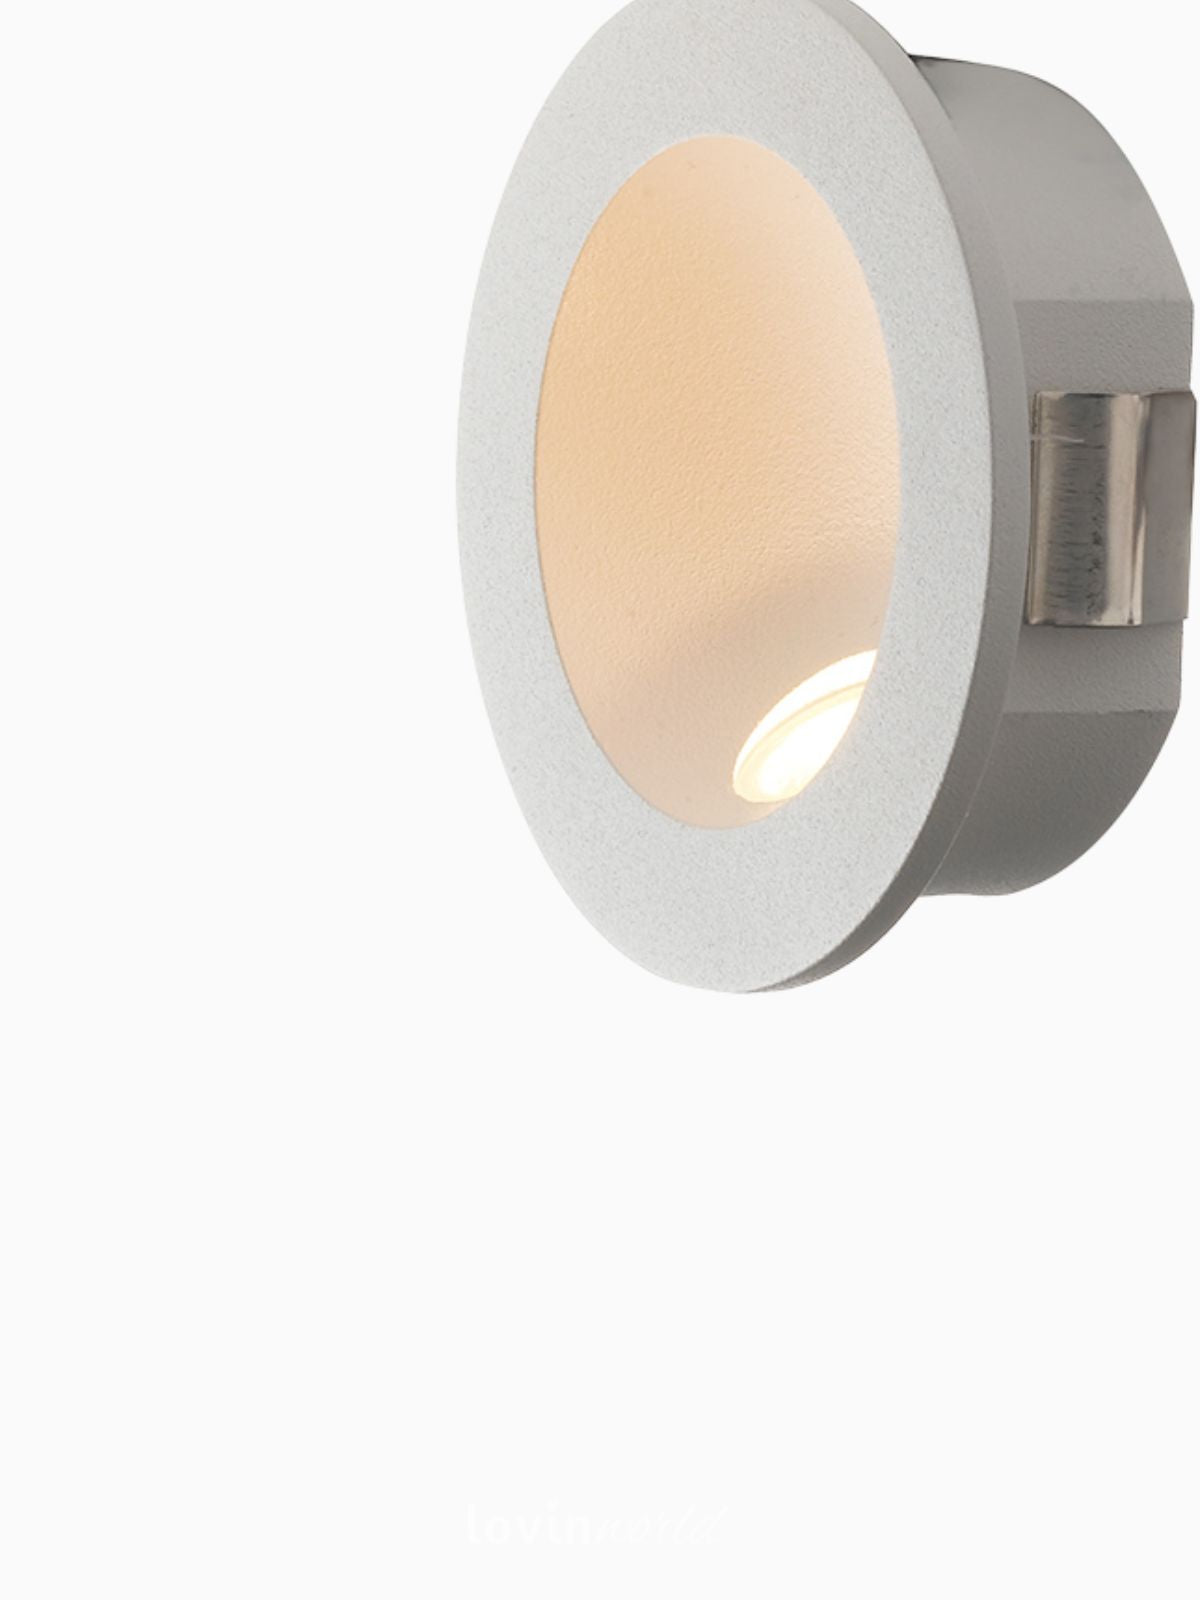 Segnapassi da esterno LED Onyx rotondo in alluminio, colore bianco-2